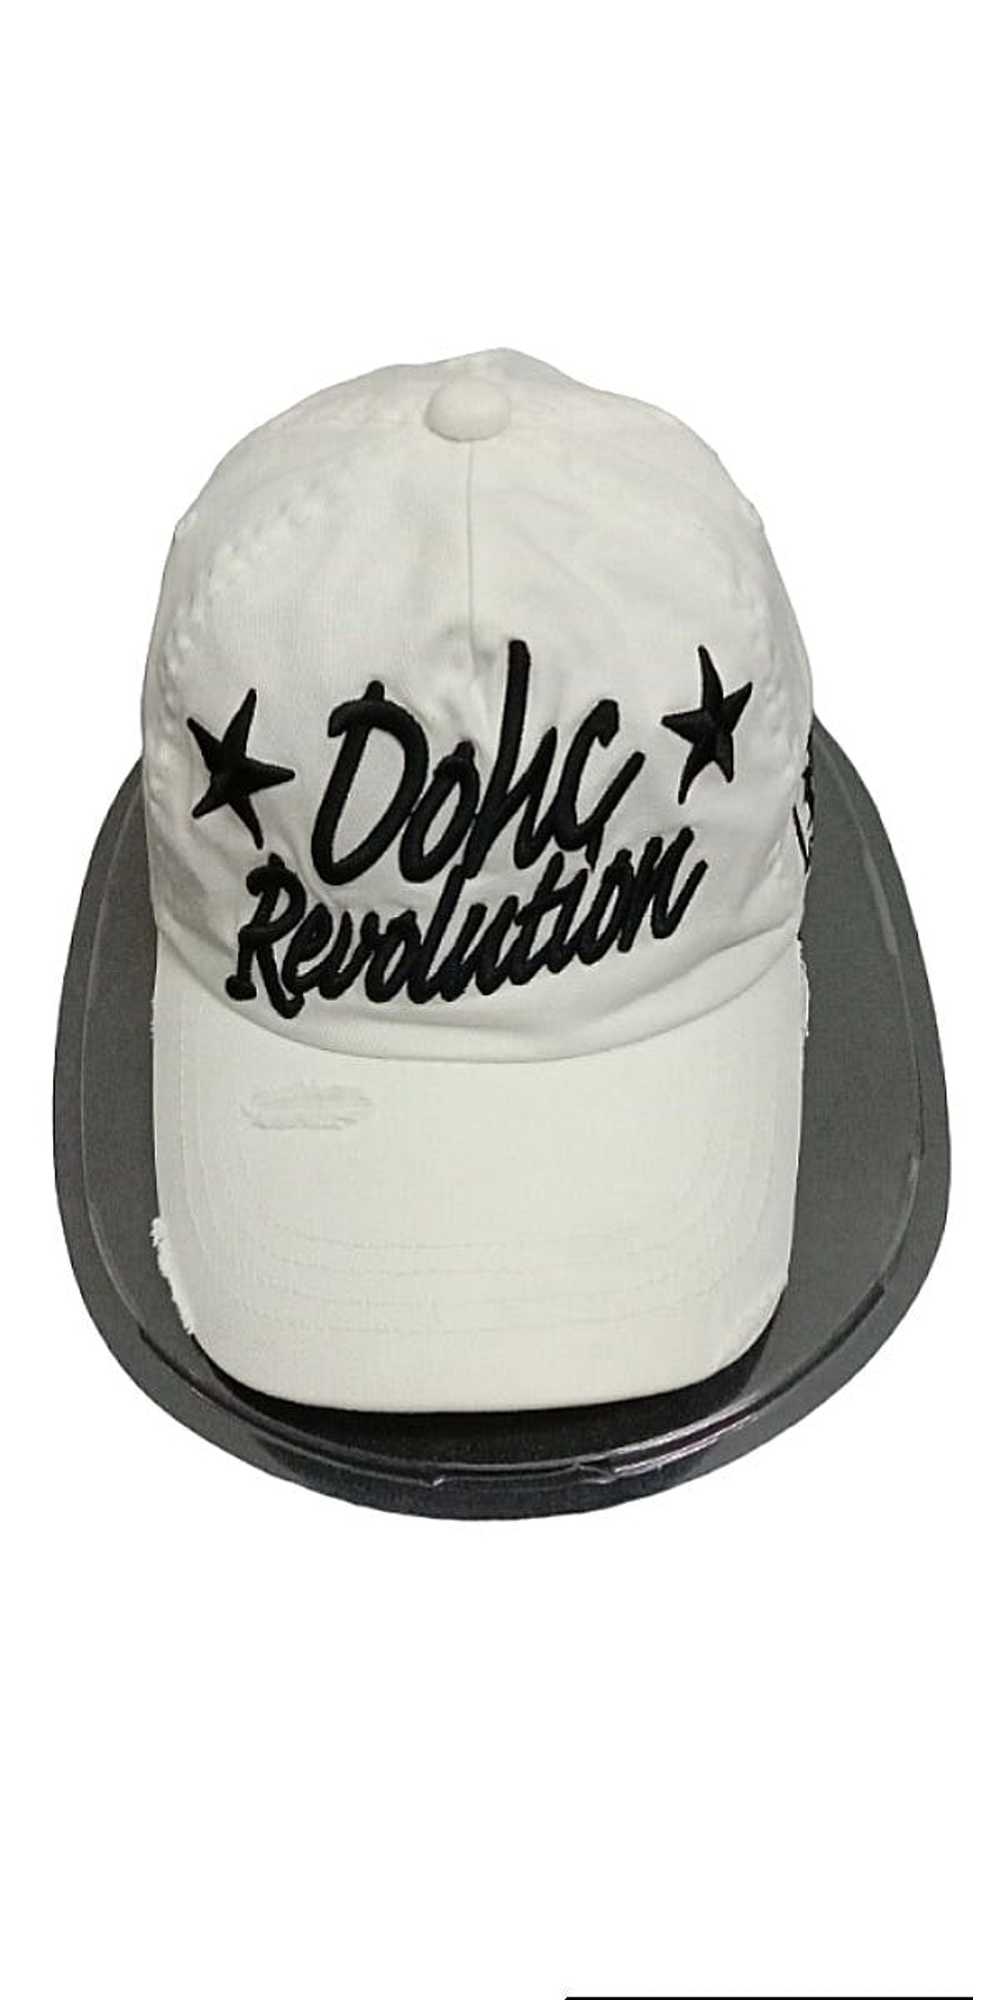 Japanese Brand Original Dohc Revolution cap - image 2